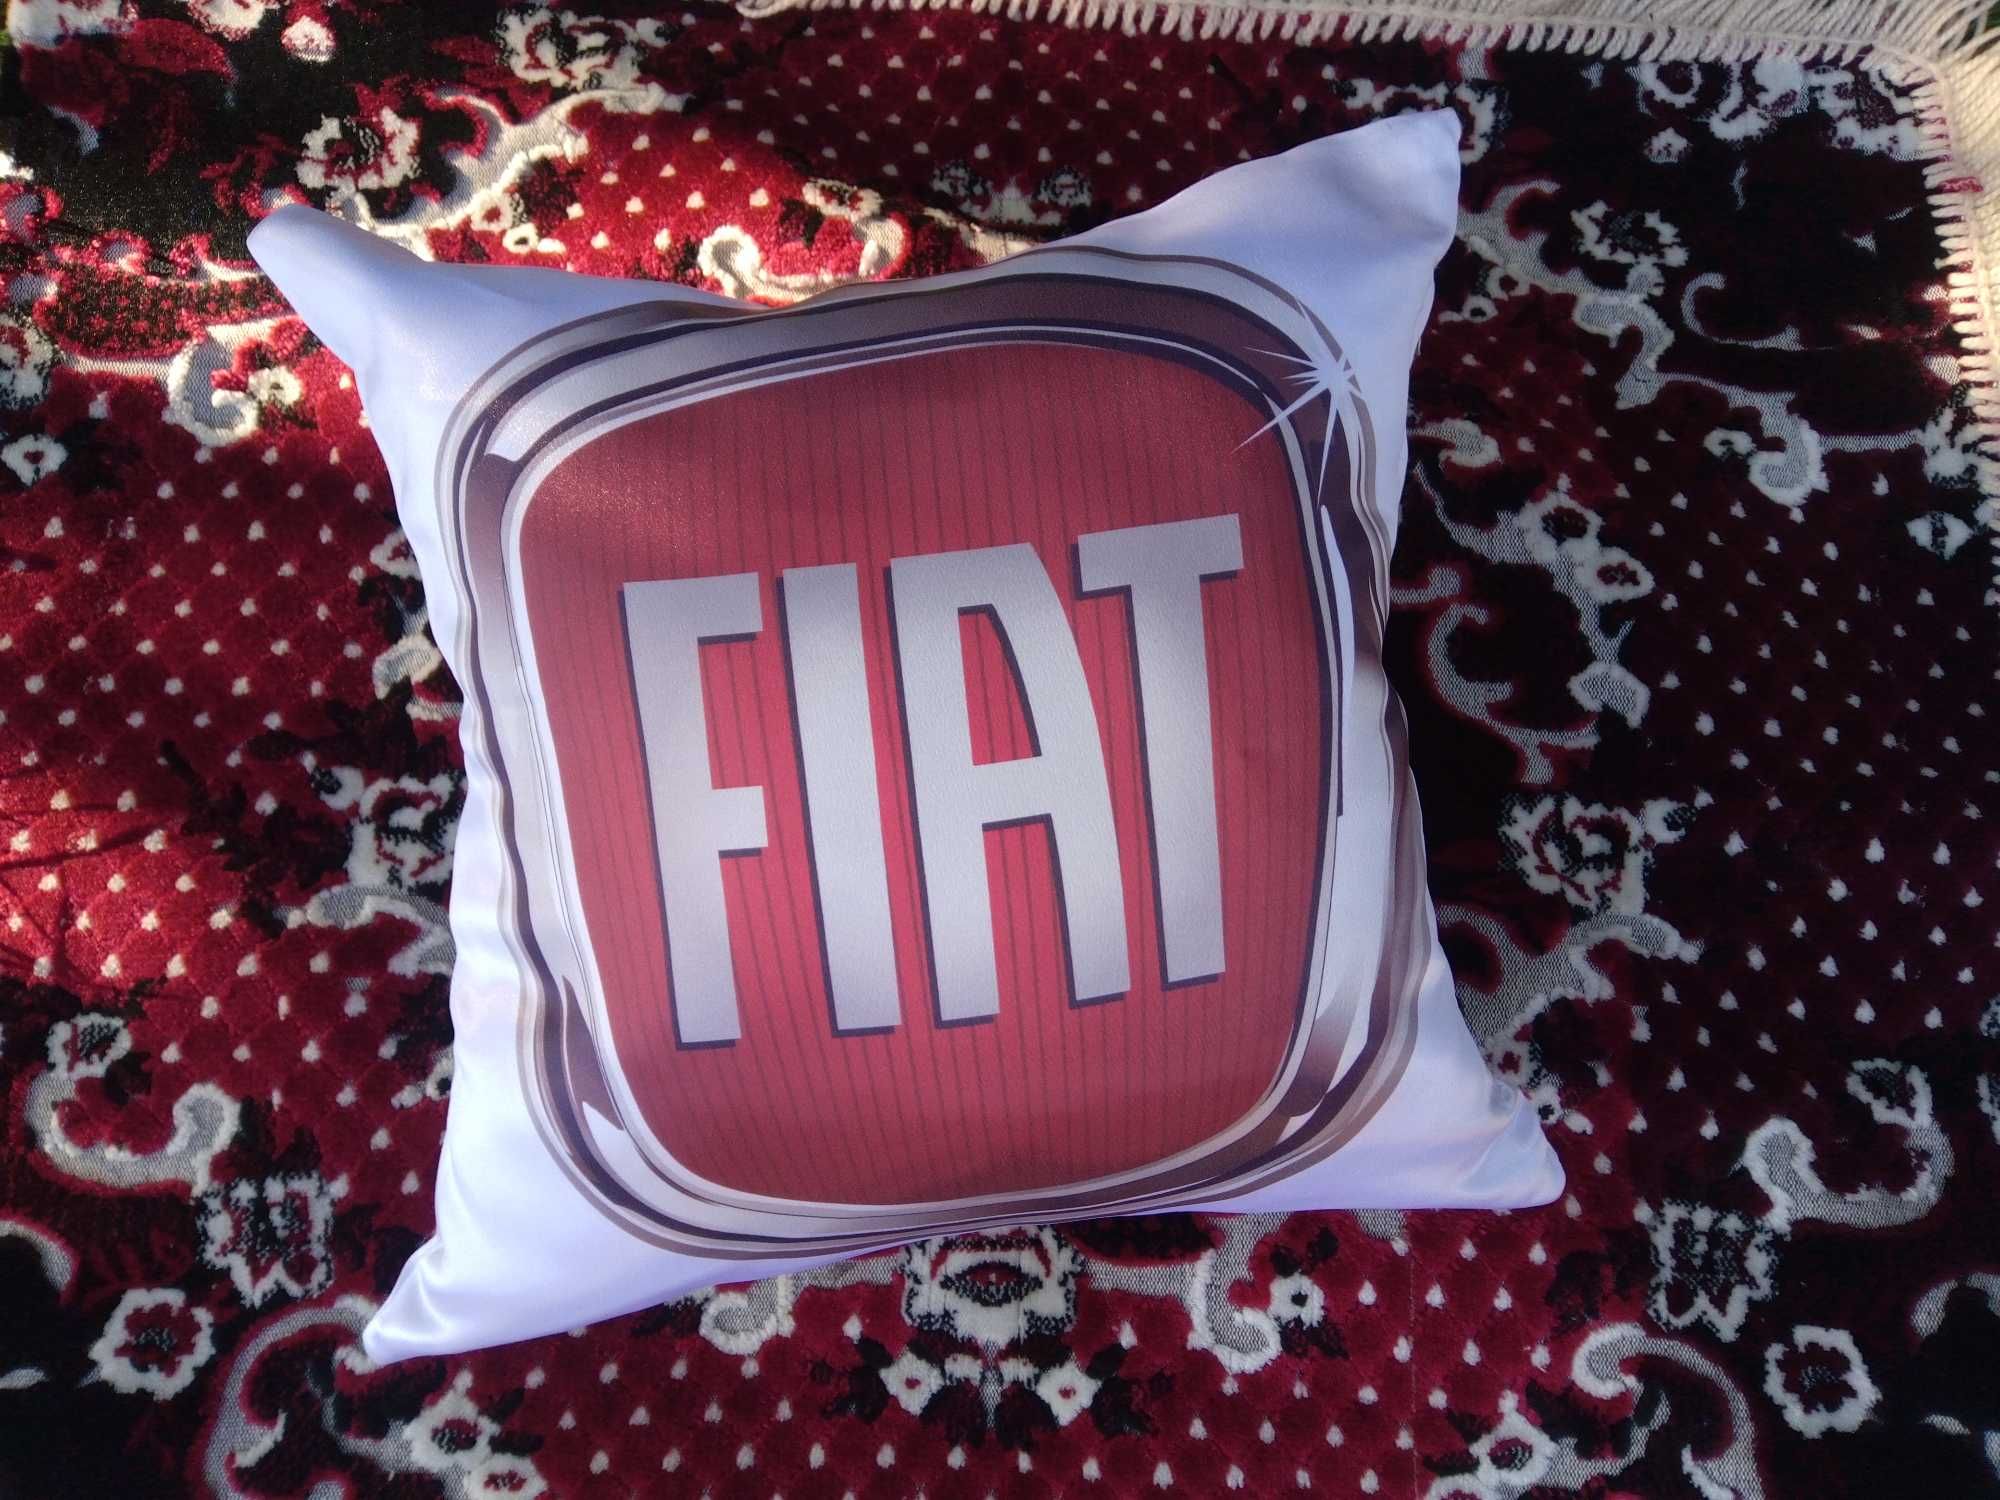 Подушка в автомобиль с логотипом FIAT